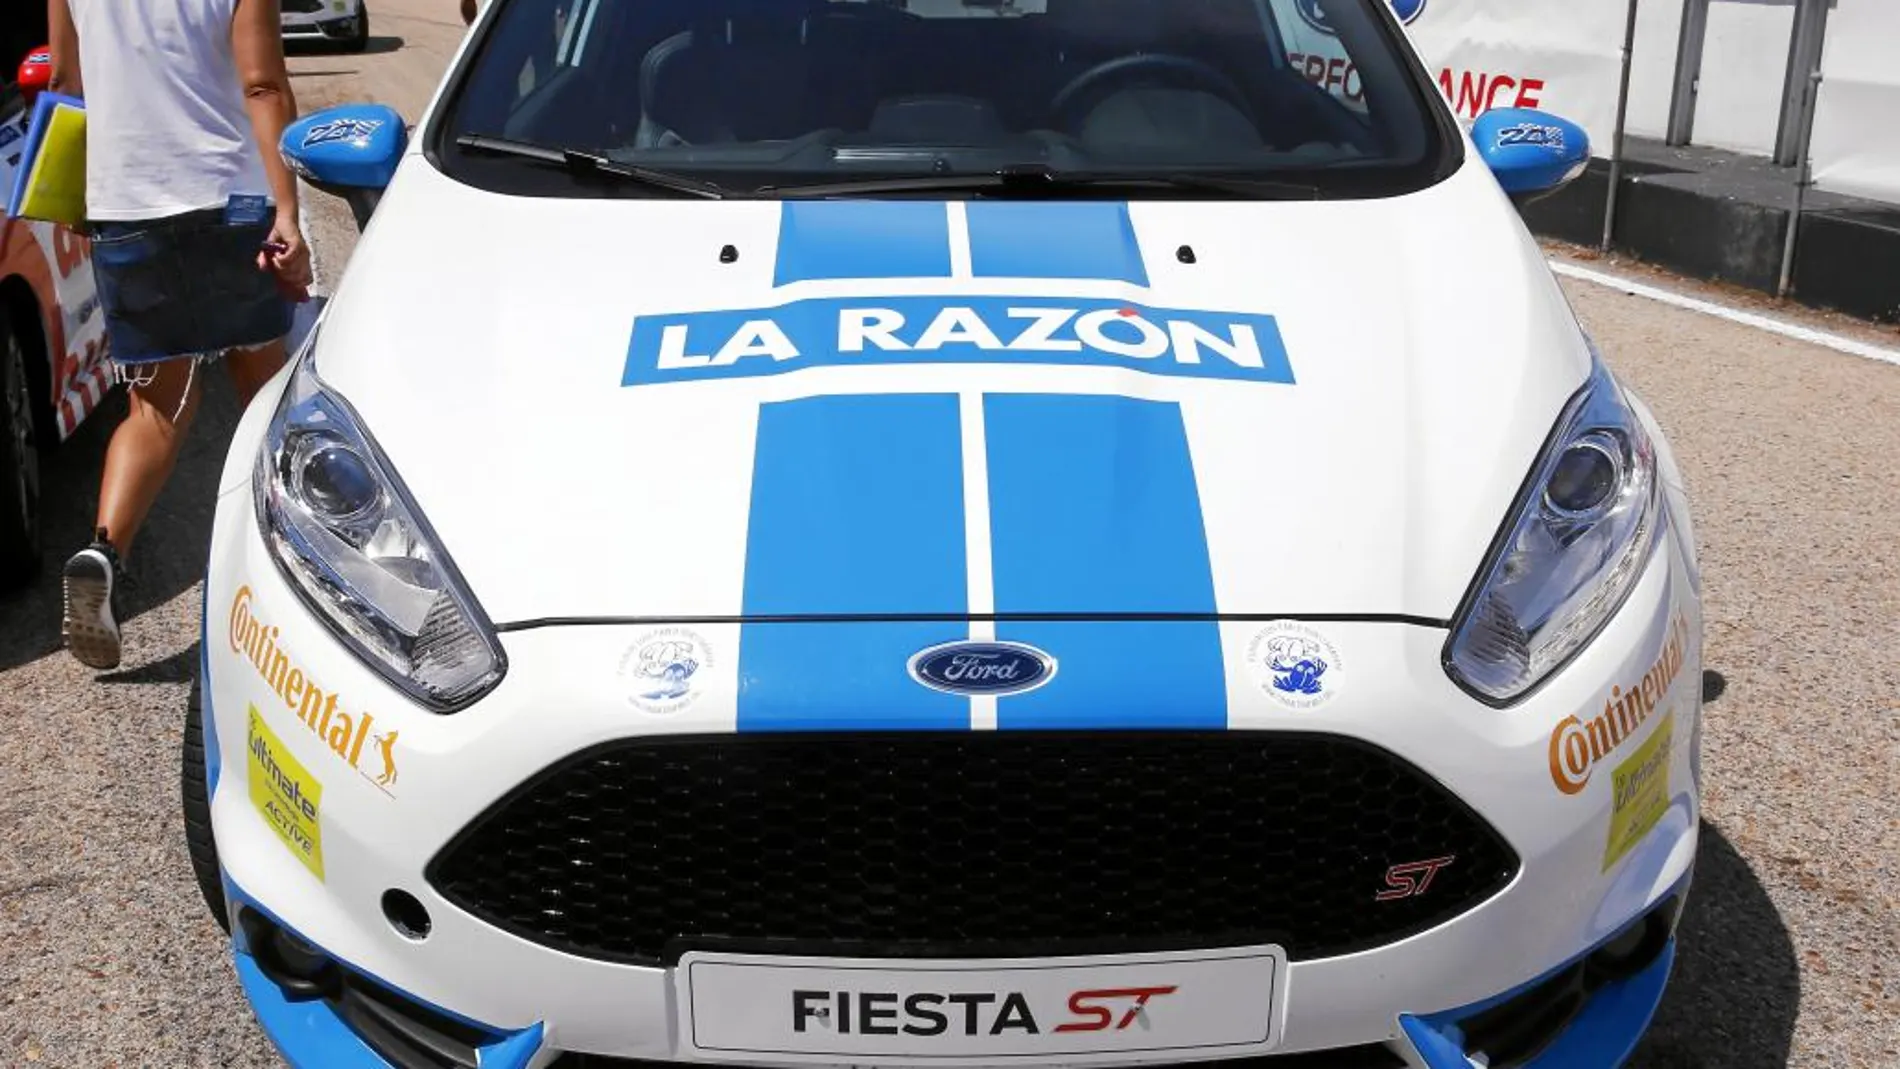 El Ford Fiesta de LA RAZÓN, que consiguió la tercera posición tras 24 horas de dura competencia